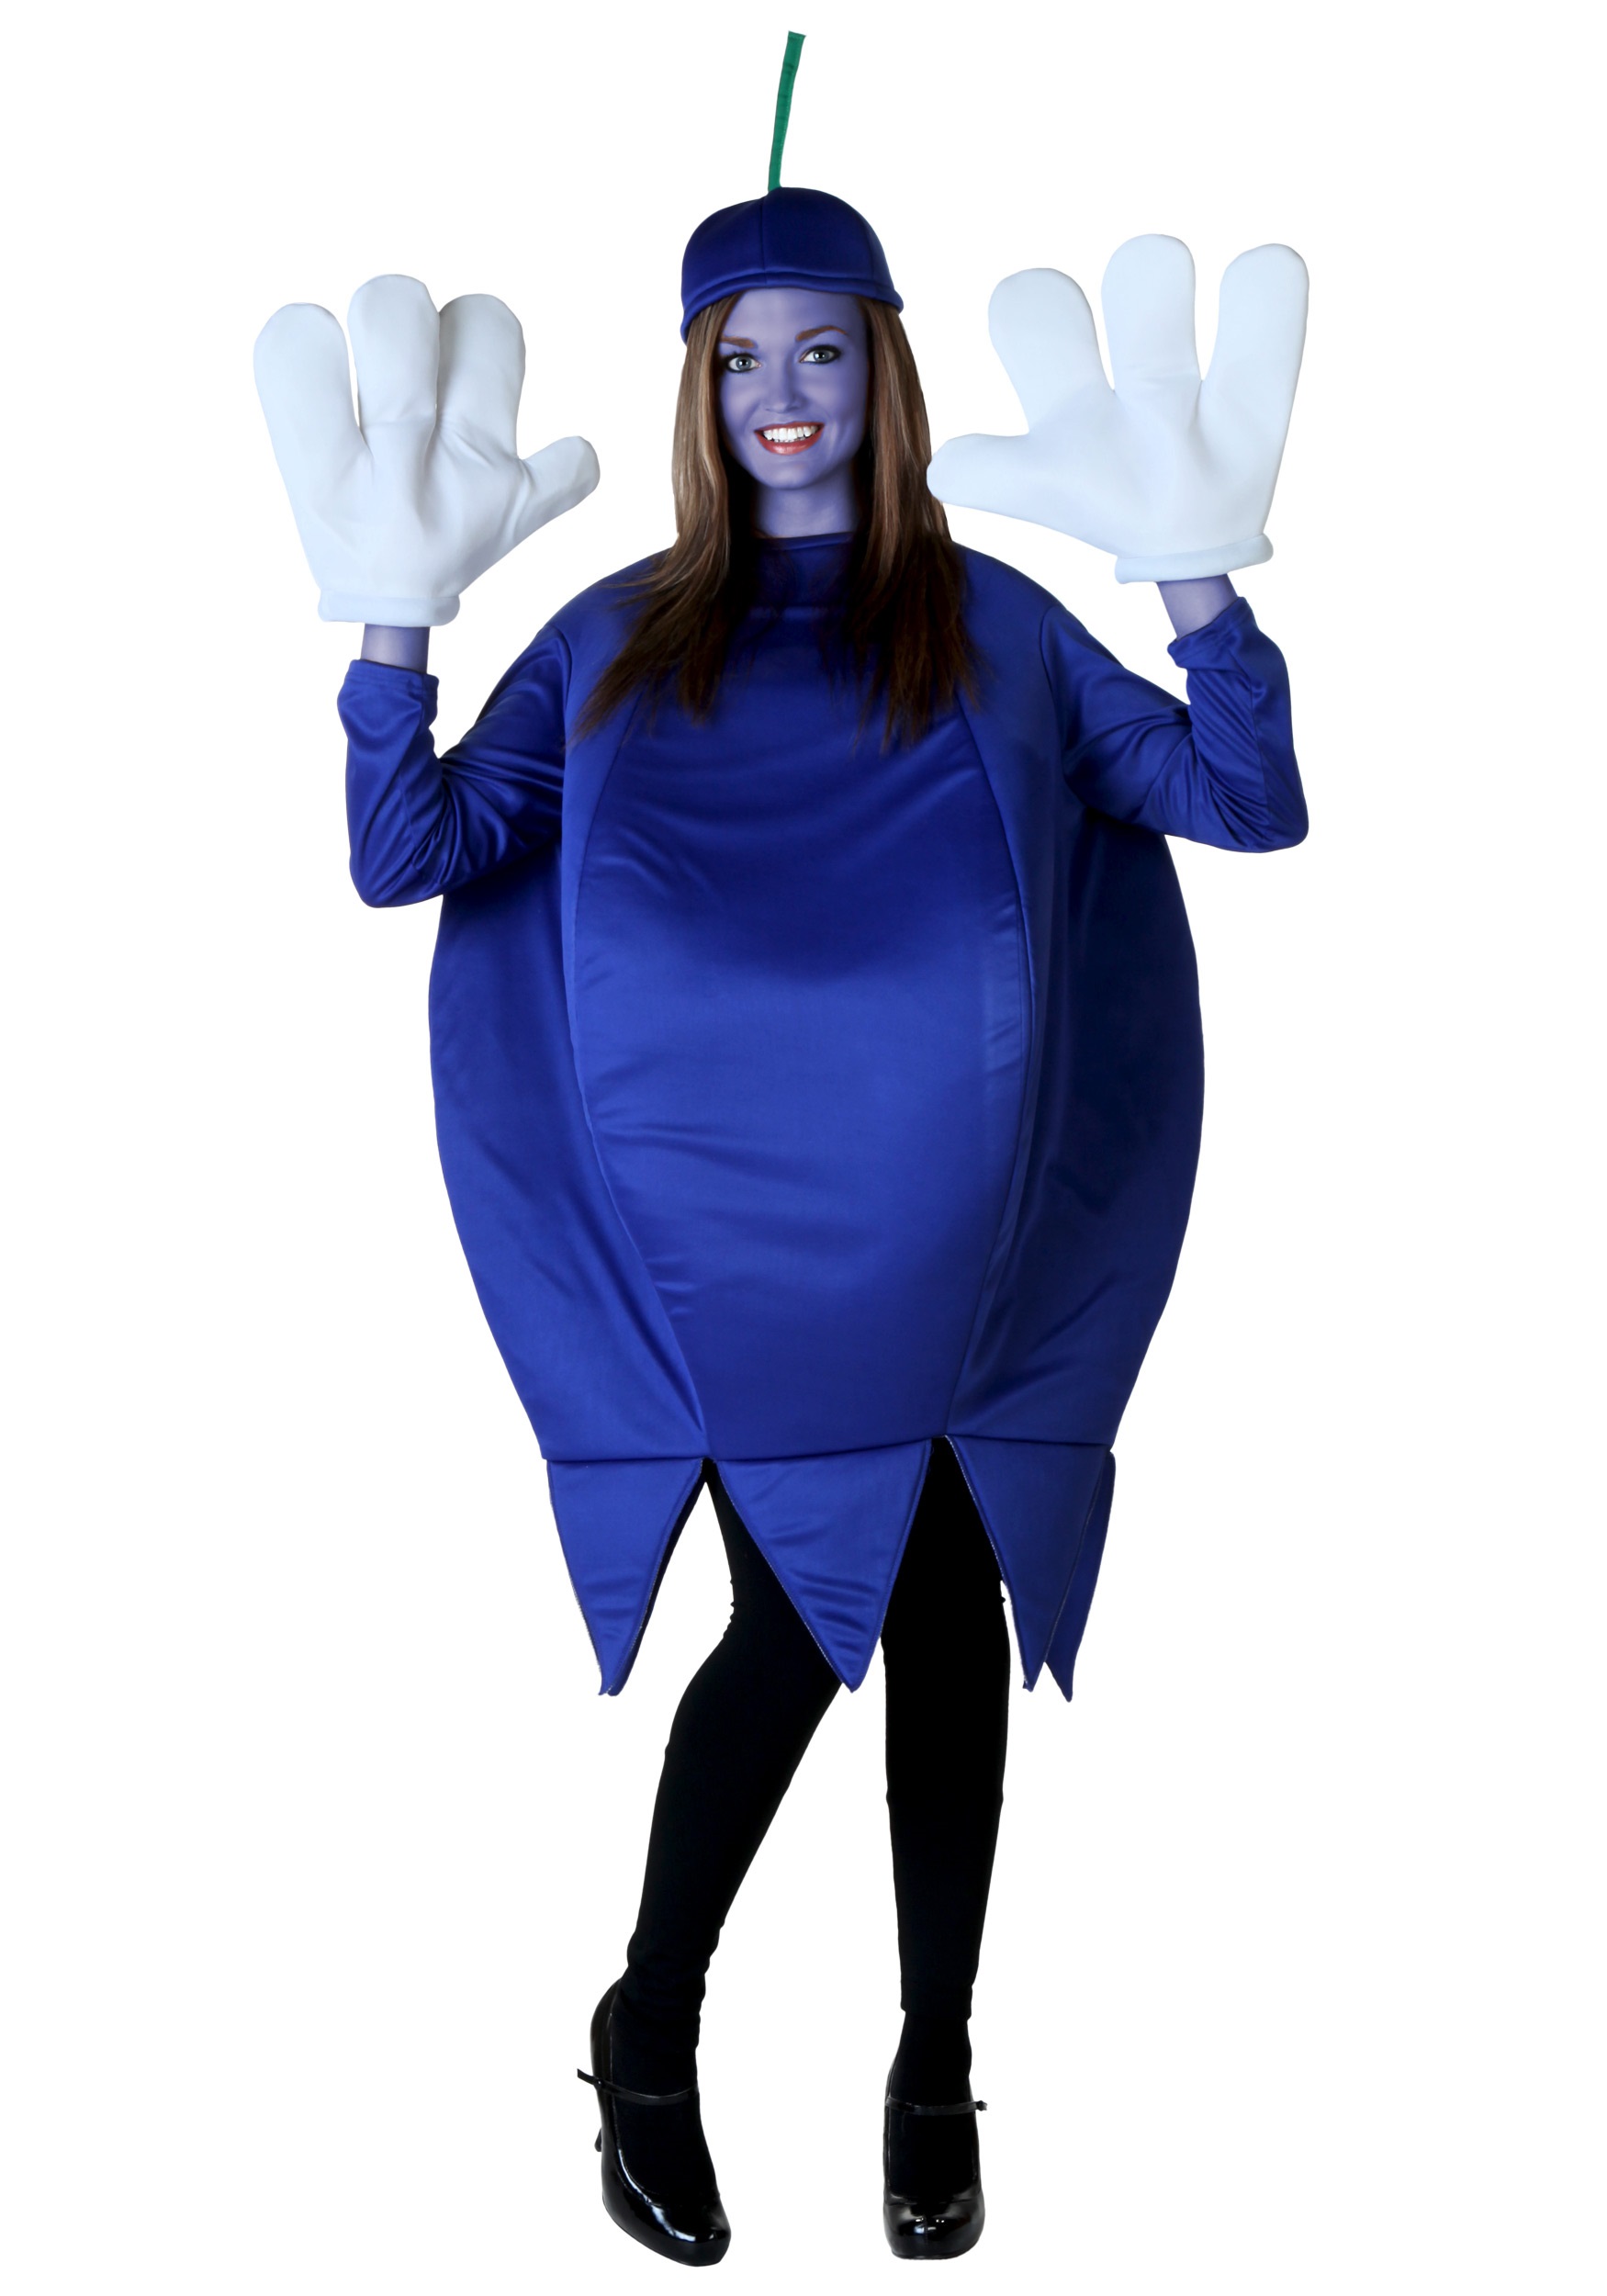 https://images.halloweencostumes.com.mx/products/16121/1-1/disfraz-de-mora-azul-para-adulto.jpg